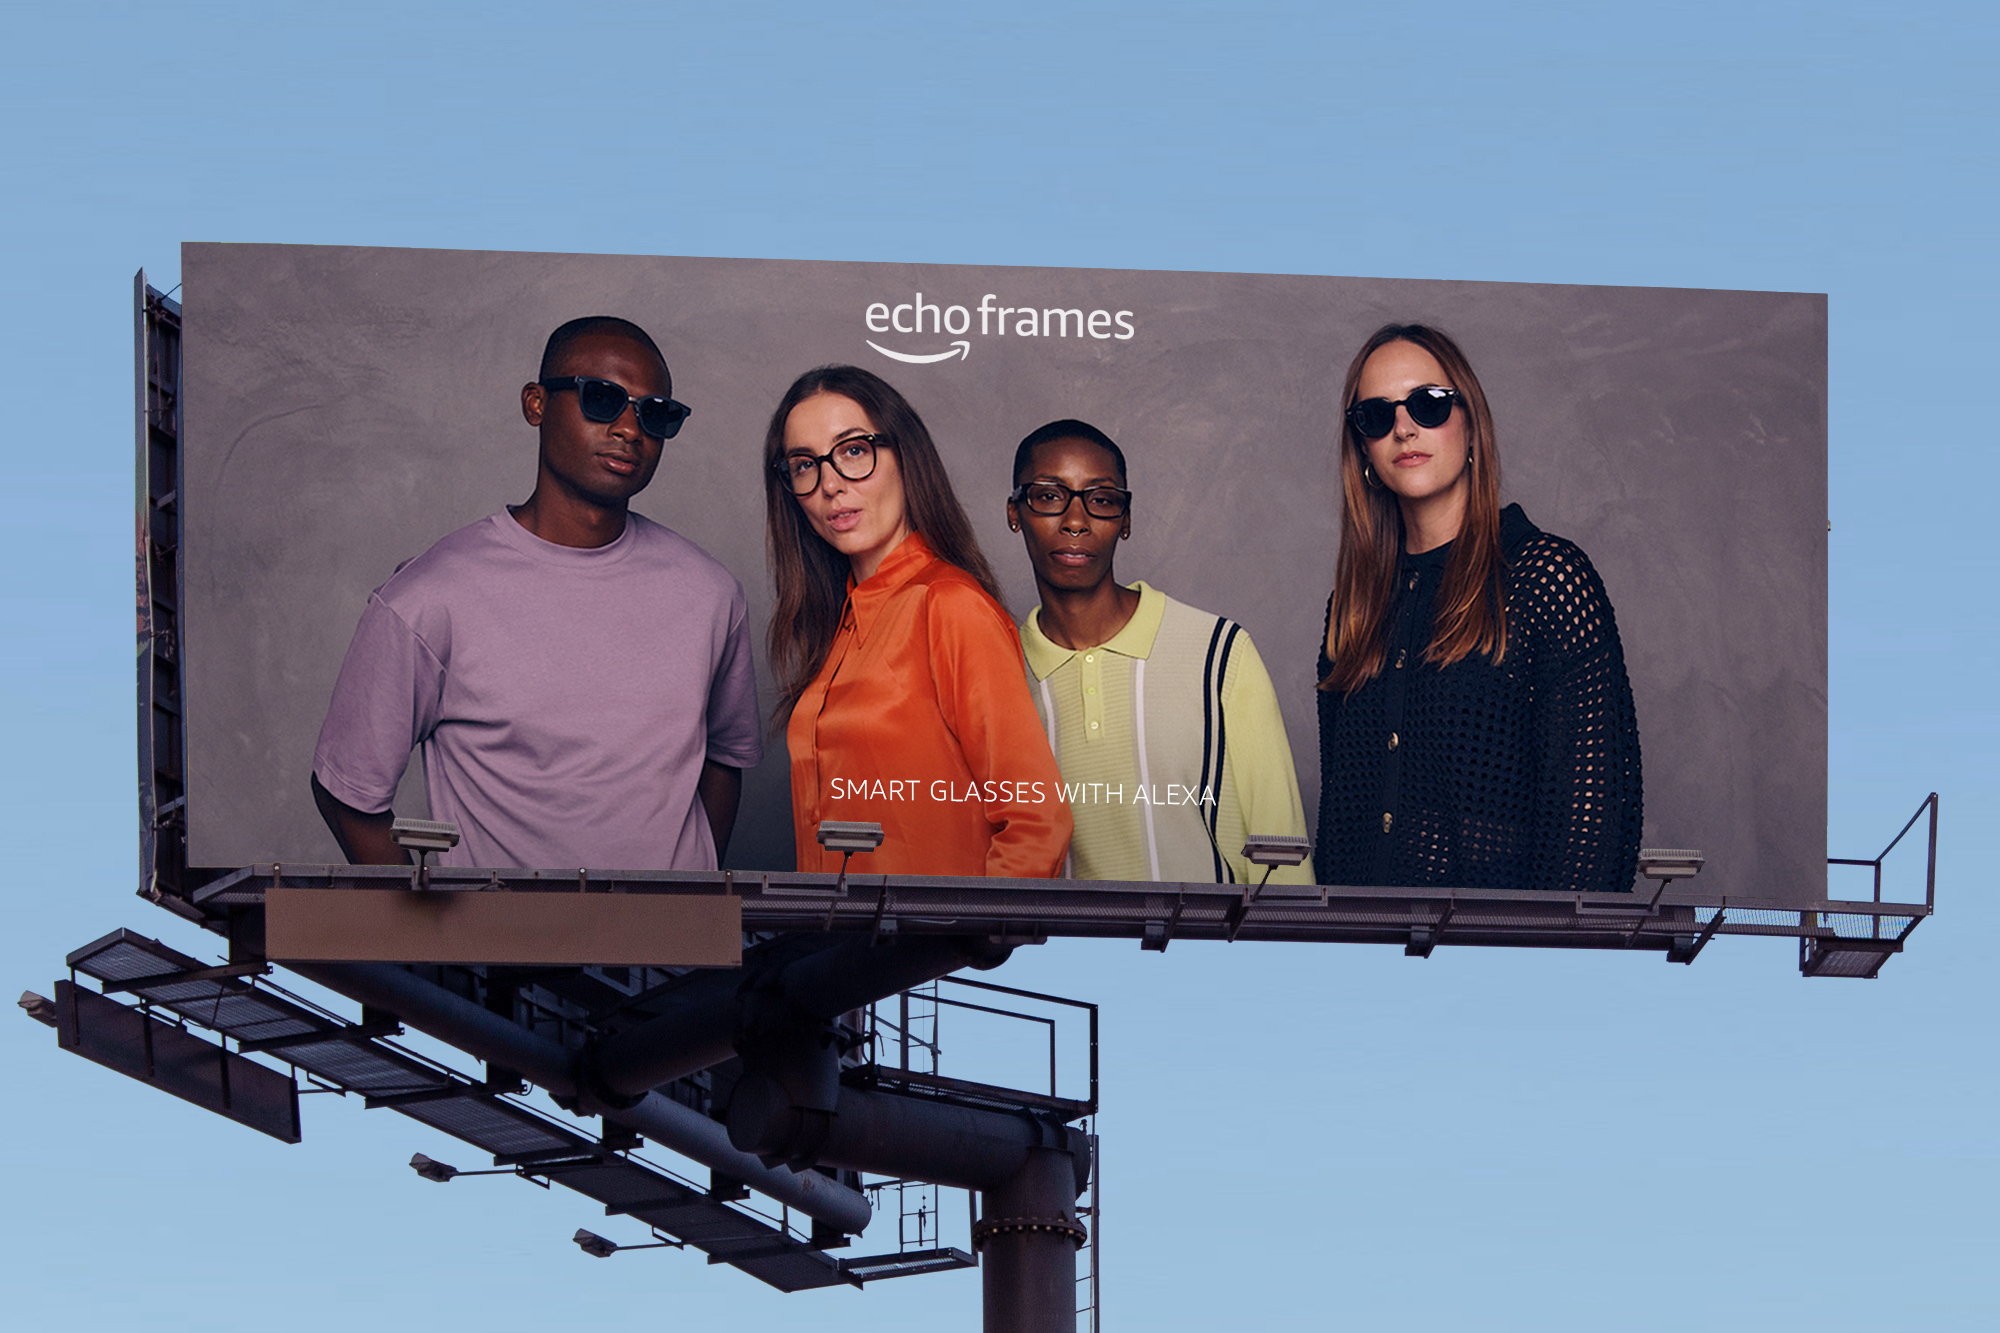 echo-frames-billboard-3